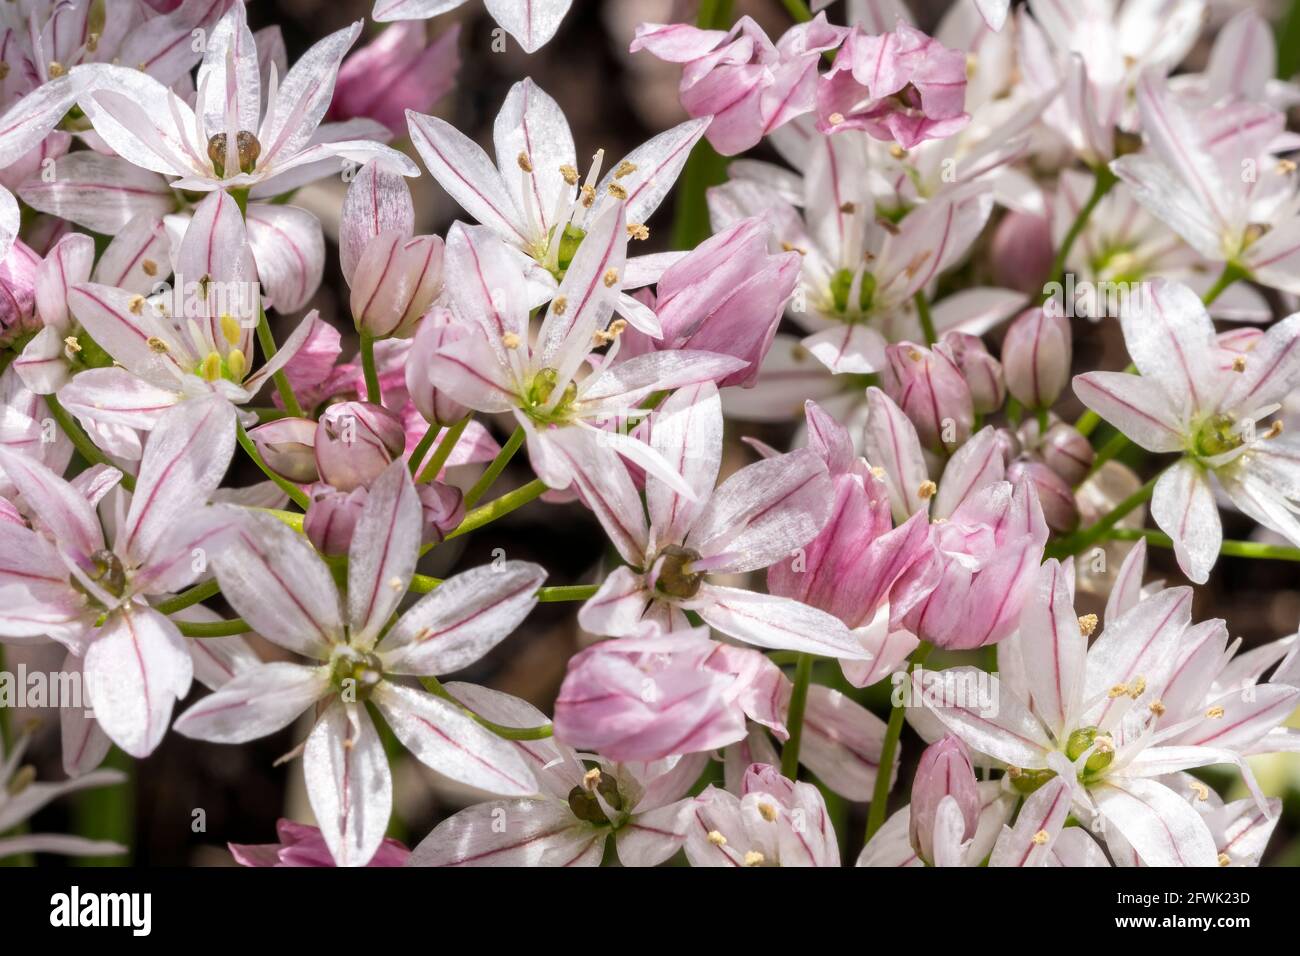 Allium 'Cameleon' una pianta bulbosa fiorita all'inizio dell'estate con un fiore bianco rosa estivo comunemente noto come una cipolla ornamentale, foto d'inventario Foto Stock